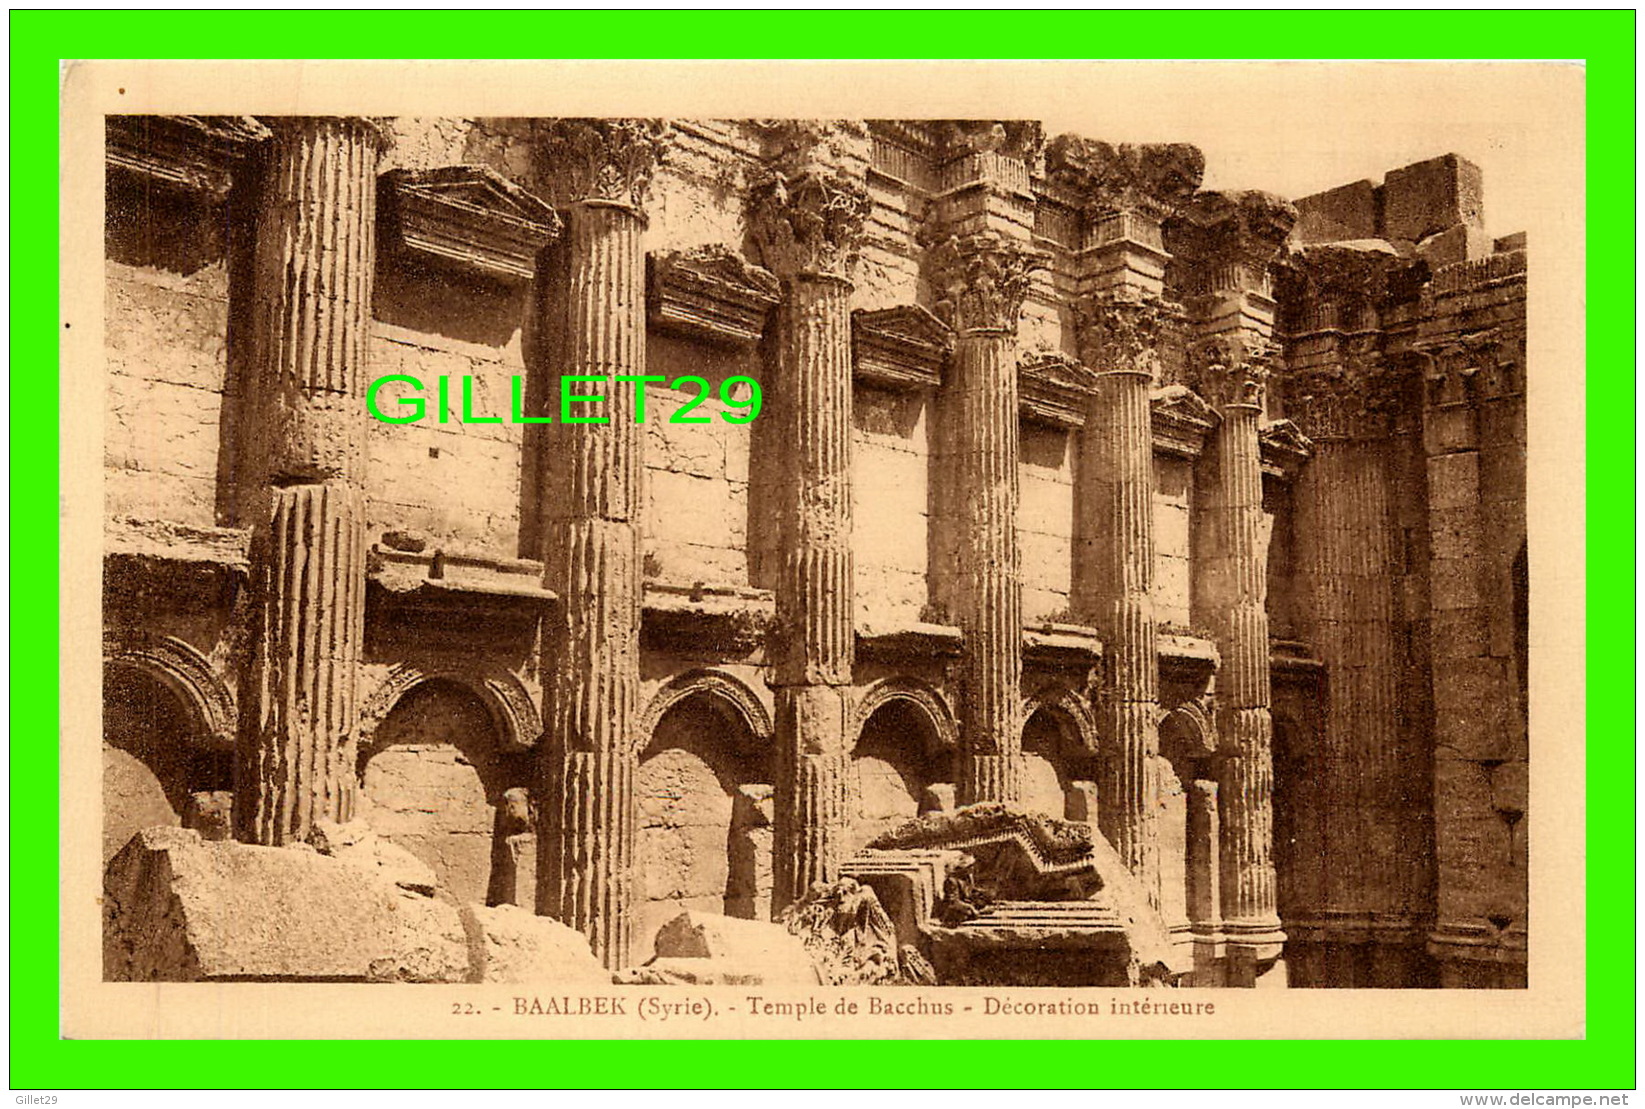 BAALBEK, SYRIE - TEMPLE DE BACCHUS, DÉCORATION INTÉRIEURE - PALMYRA HOTEL - COLLECTION ORIENT-MONUMENTS - - Syrie